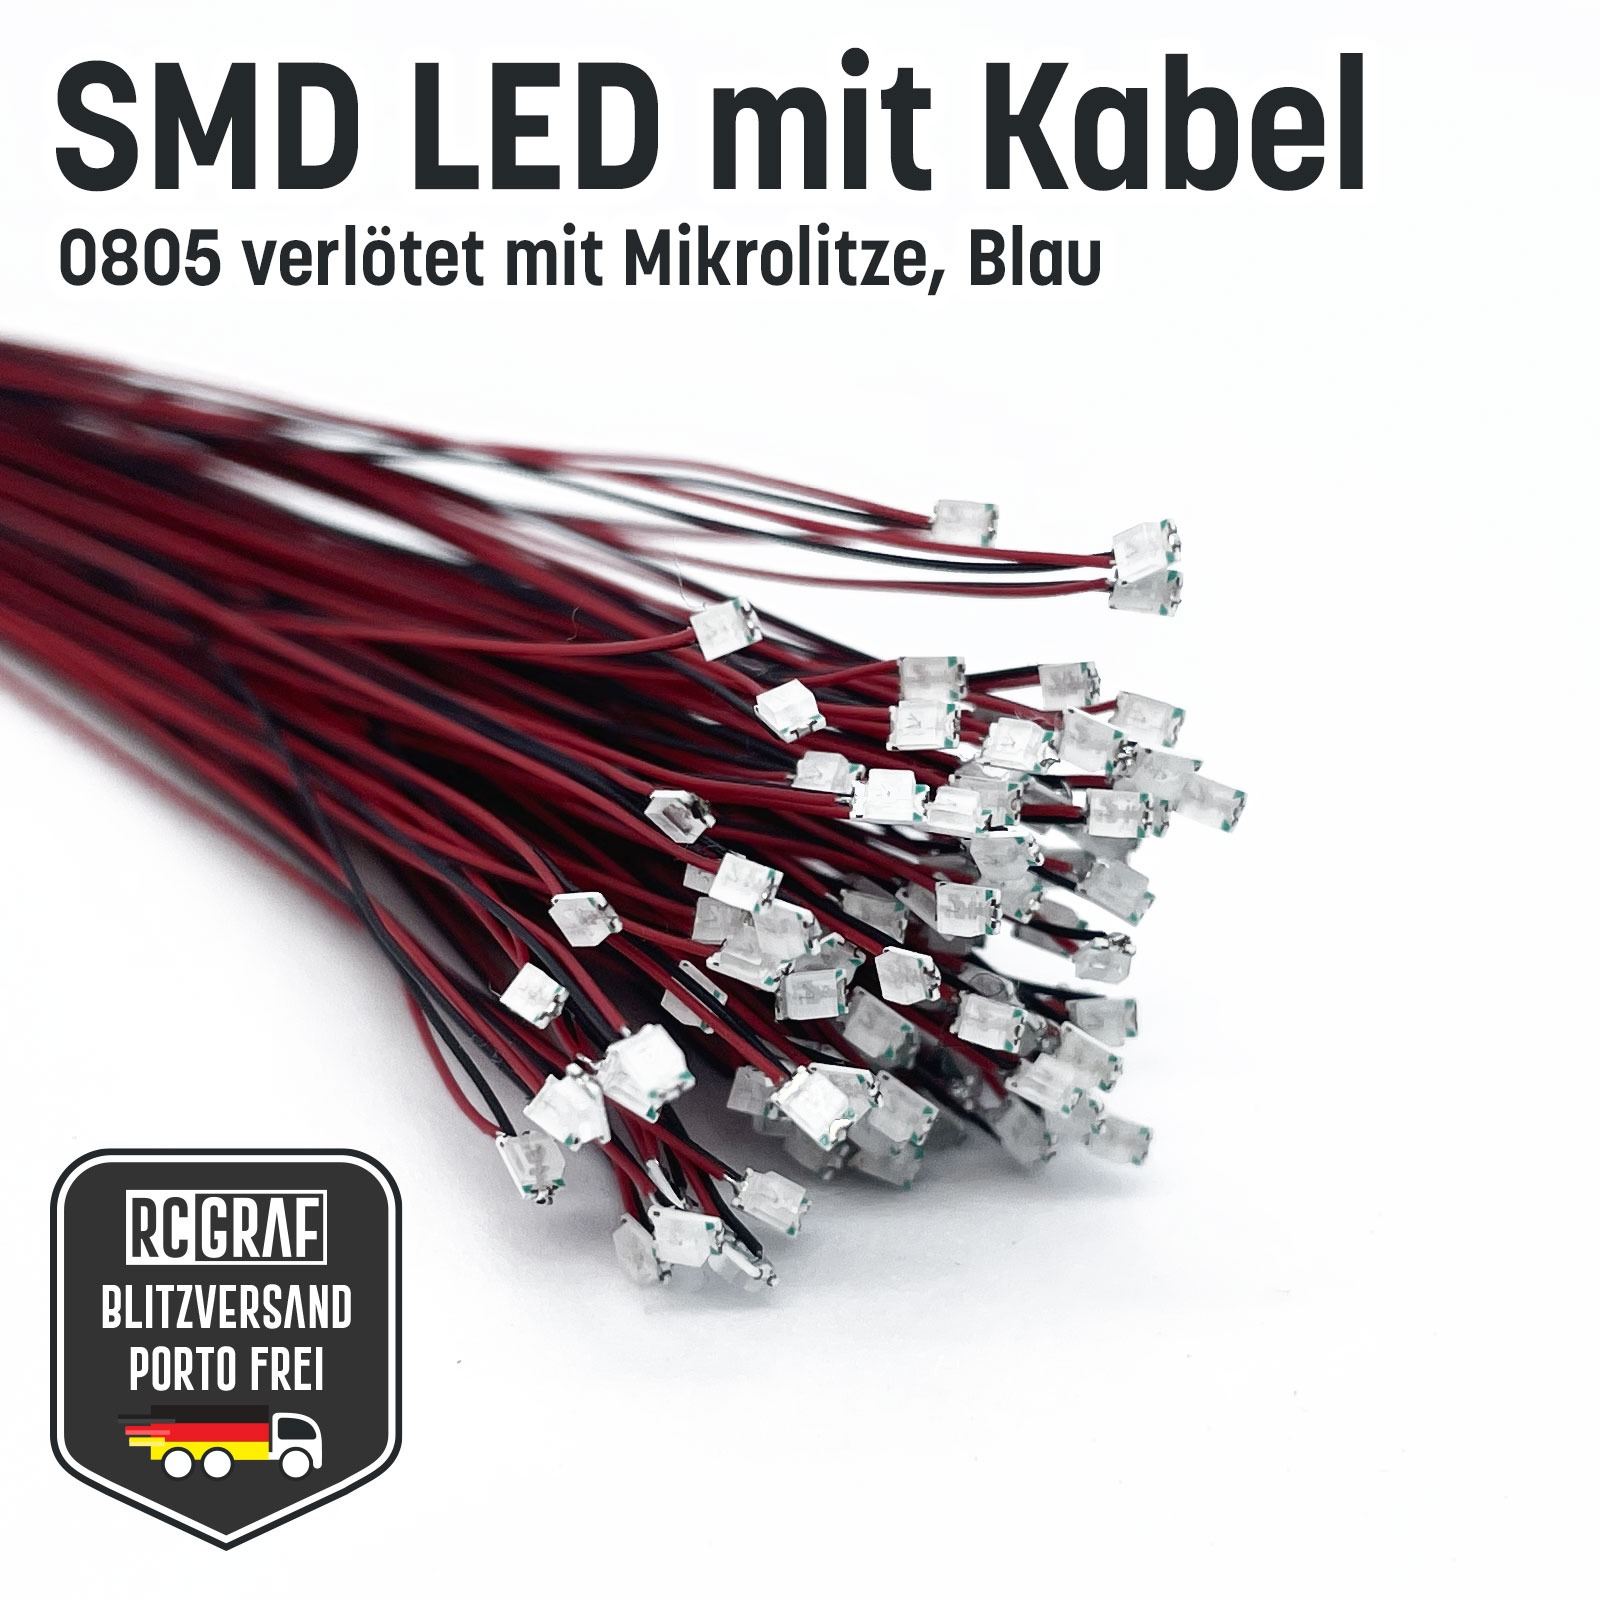 SMD LED 0805 Microlitze 30cm verlötet 3